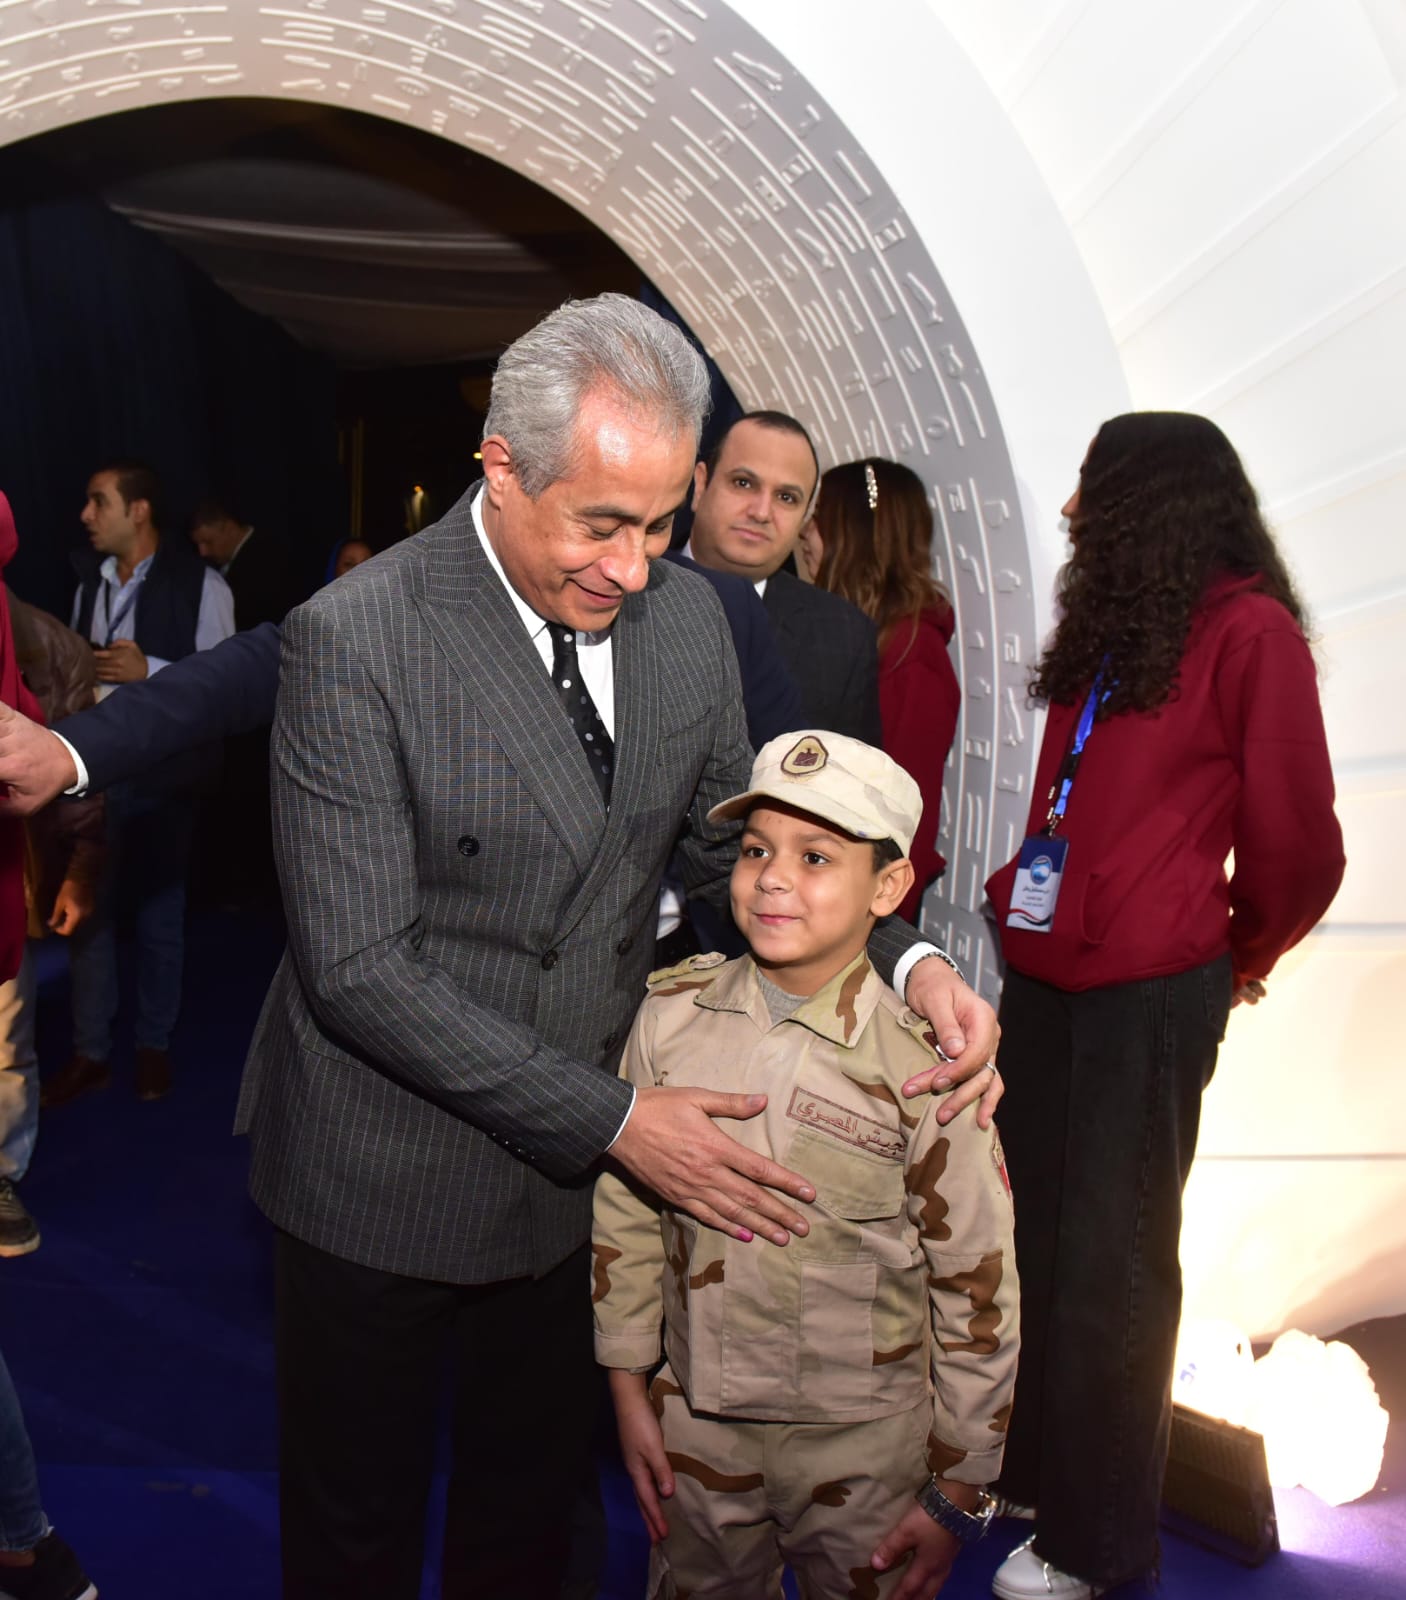 وزير العمل يلتقط صورا مع طفل خلال مشاركته بالانتخابات الرئاسية